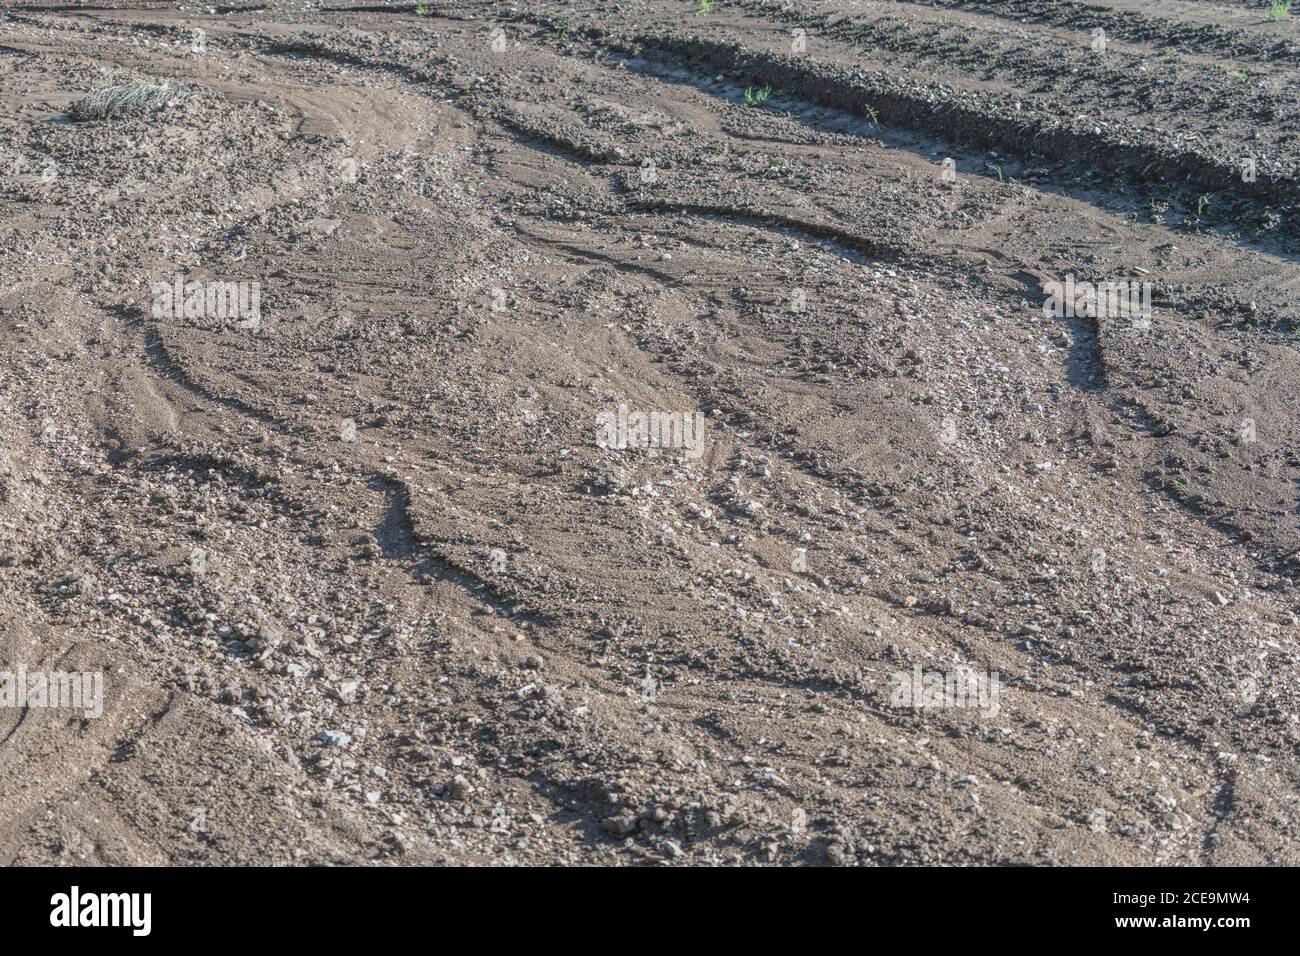 Grave erosione dell'acqua piovana in un campo di patate dove l'acqua ha lavato via le file più basse di patate. Effetti di pioggia pesante. Vedere le note aggiuntive. Foto Stock